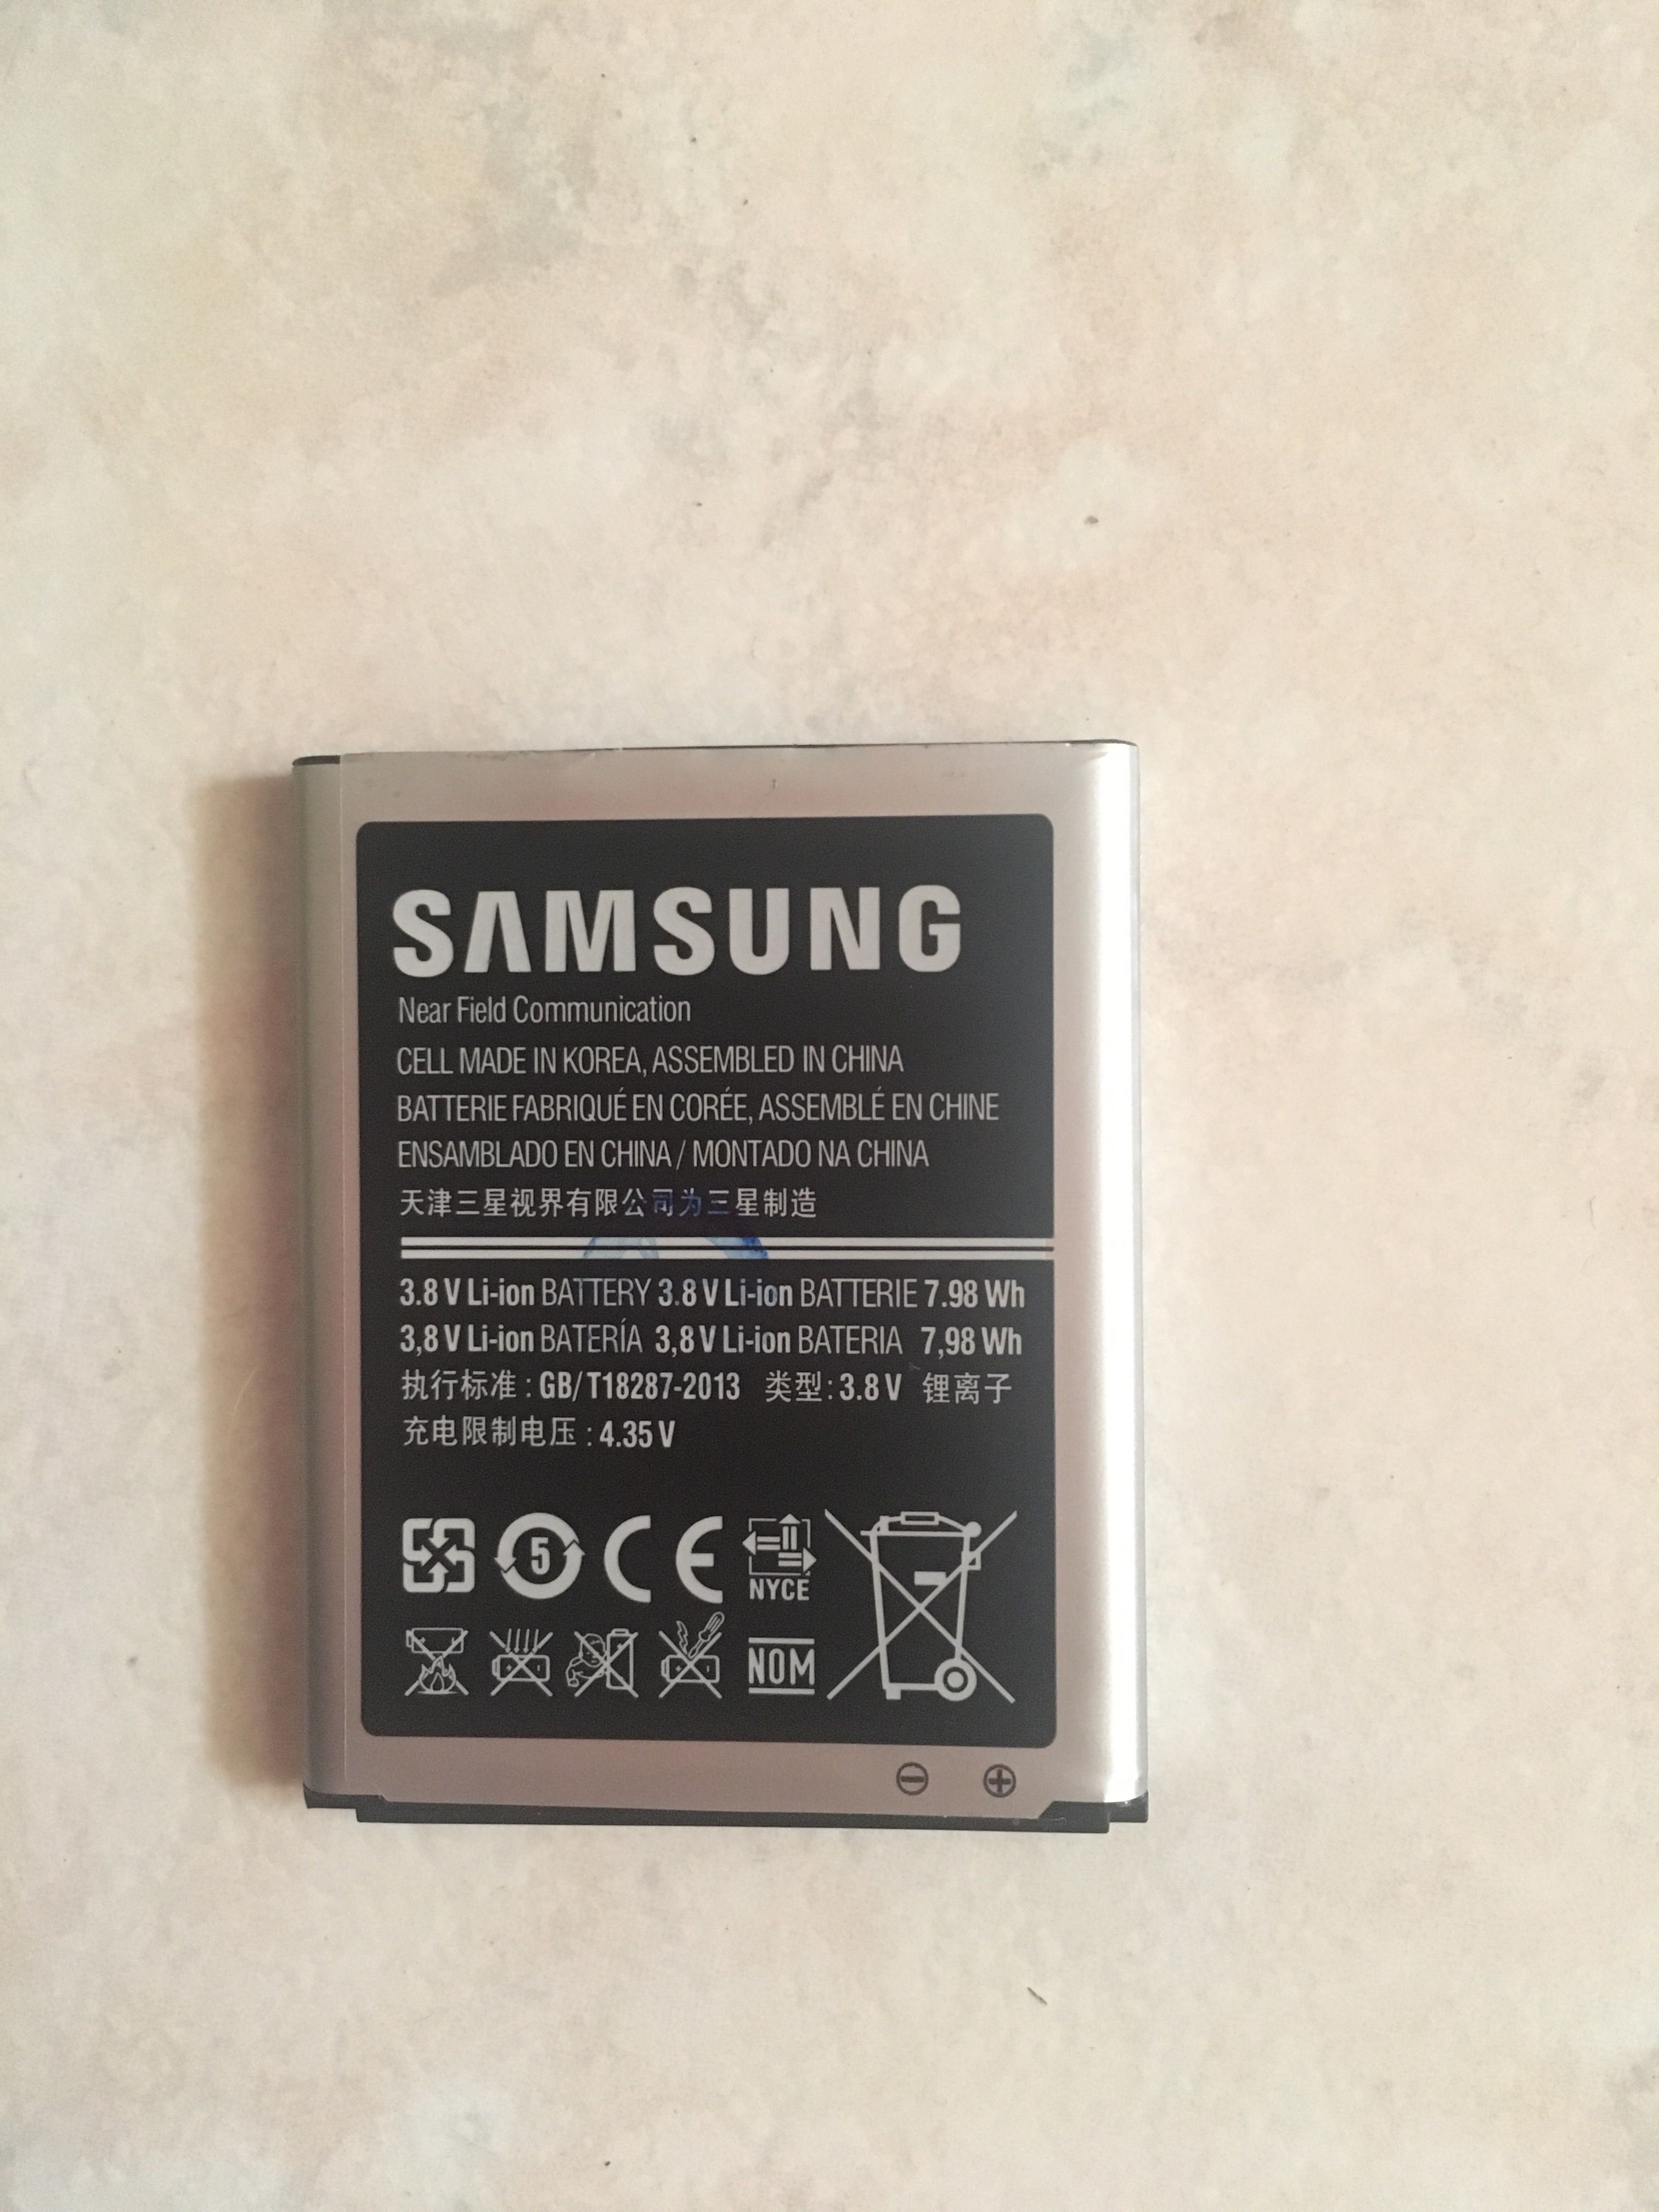 Risolto: Batterie: Come verificare se sono originali? - Samsung Community